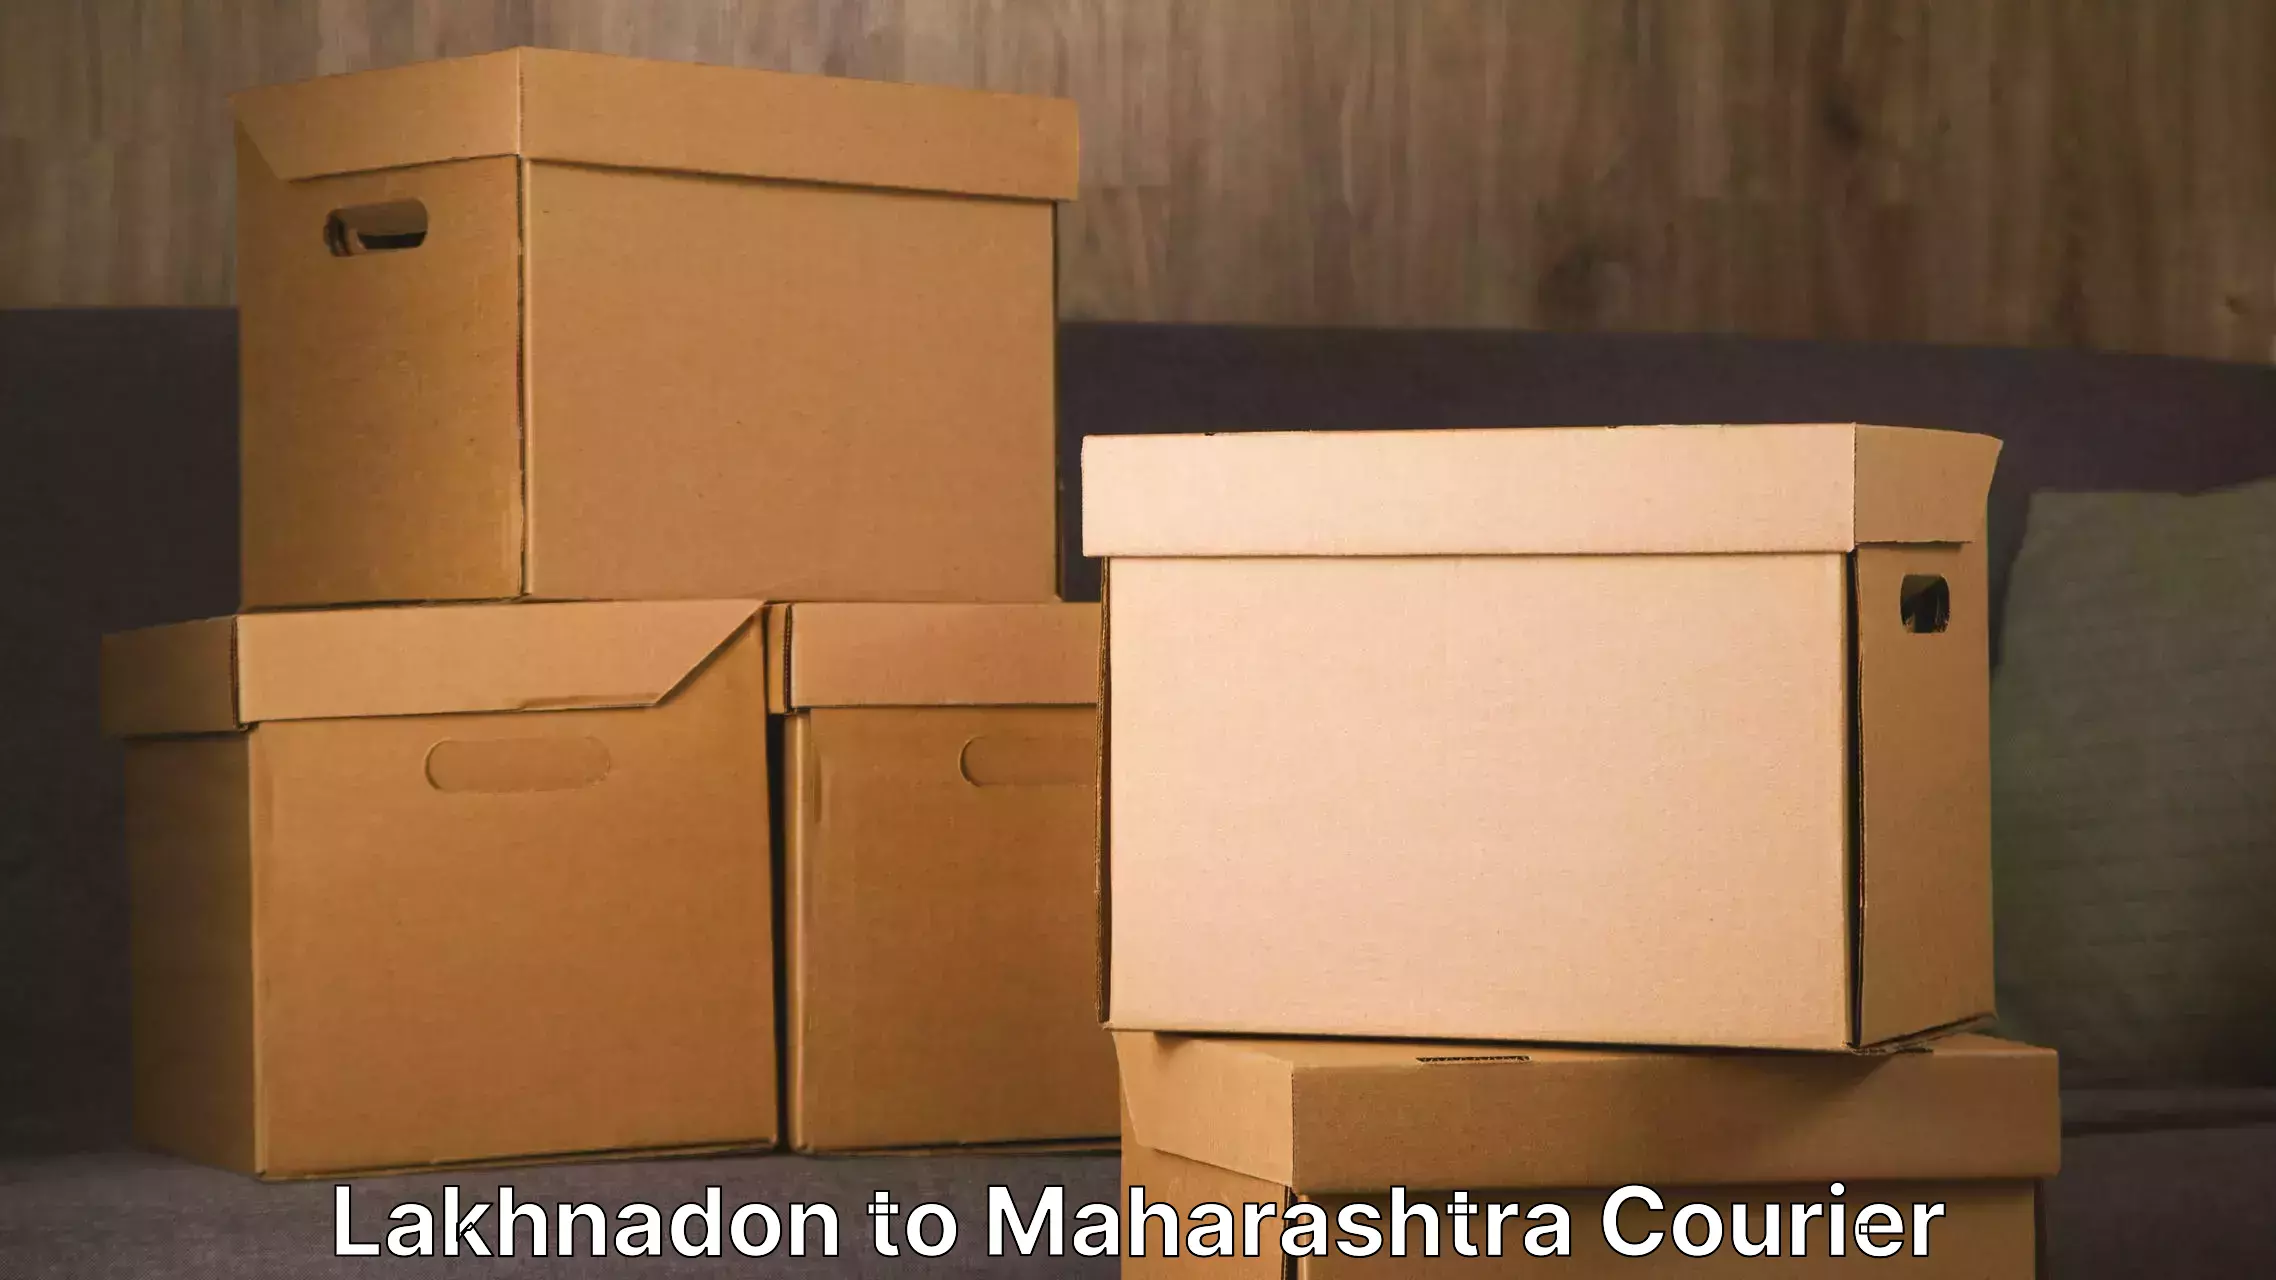 Furniture delivery service Lakhnadon to Walchandnagar